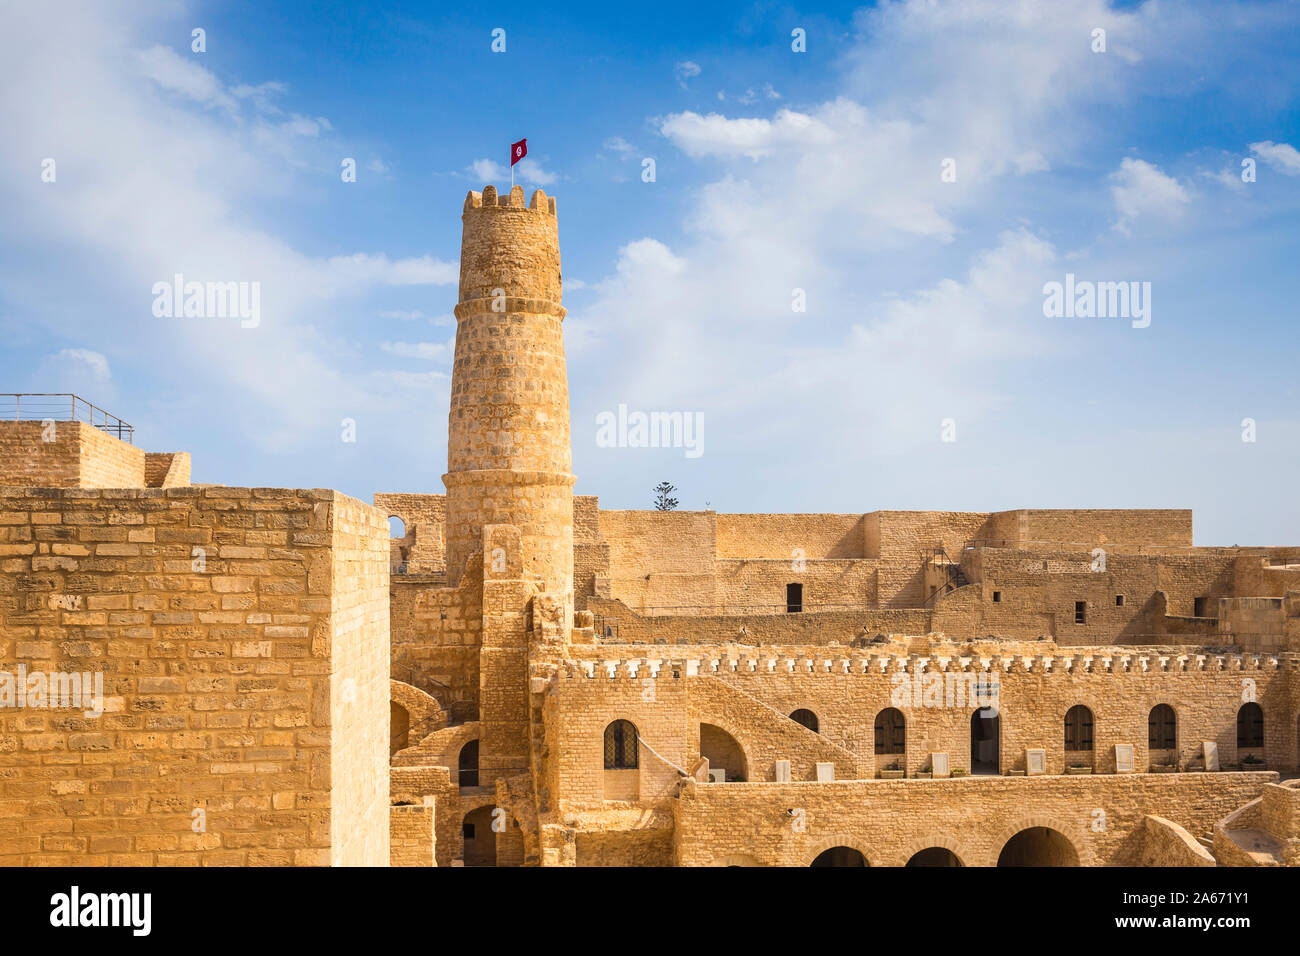 Túnez, Monastir, Rabat - monasterio islámico fortificado Foto de stock